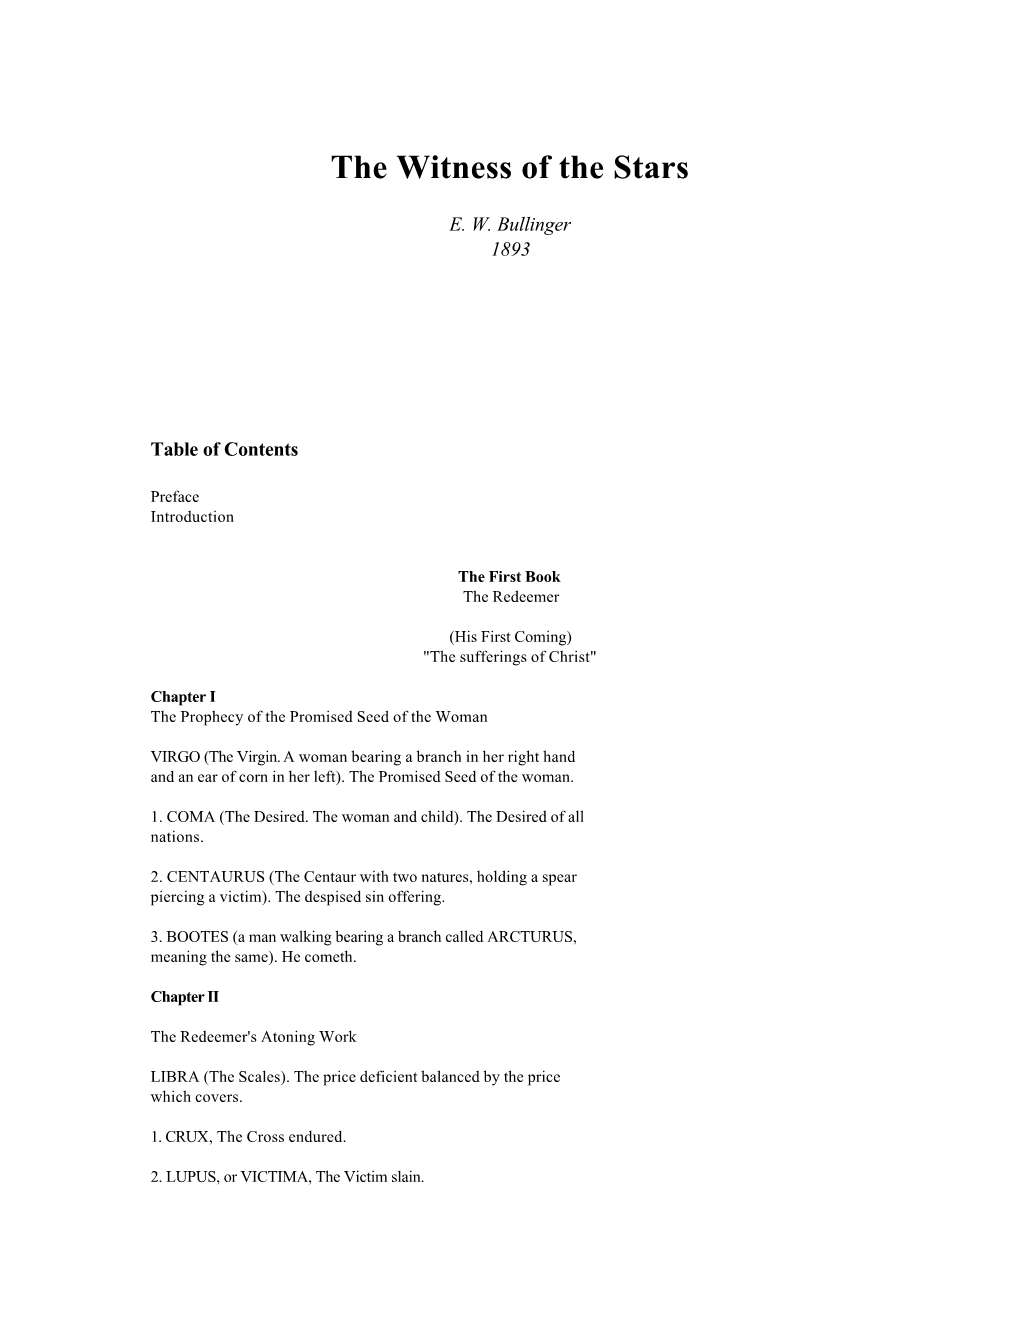 E.W. Bullinger: the Witness of the Stars